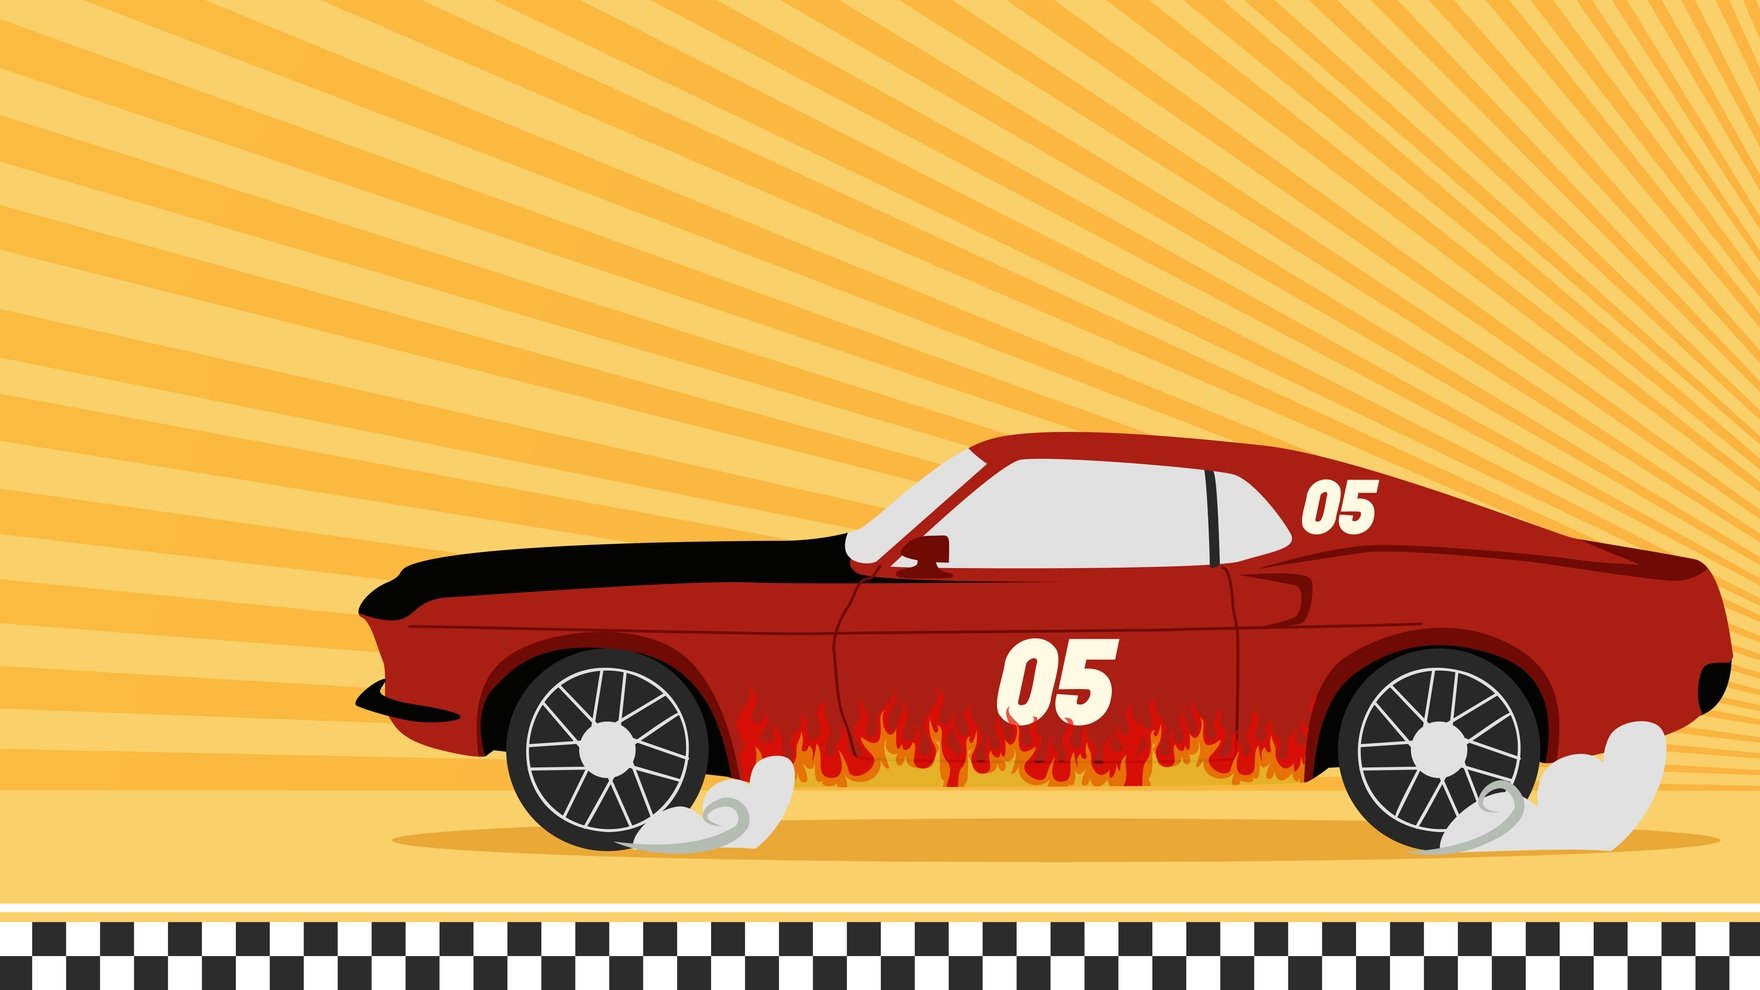 Car Racing Background in Illustrator, EPS, SVG, JPG, PNG